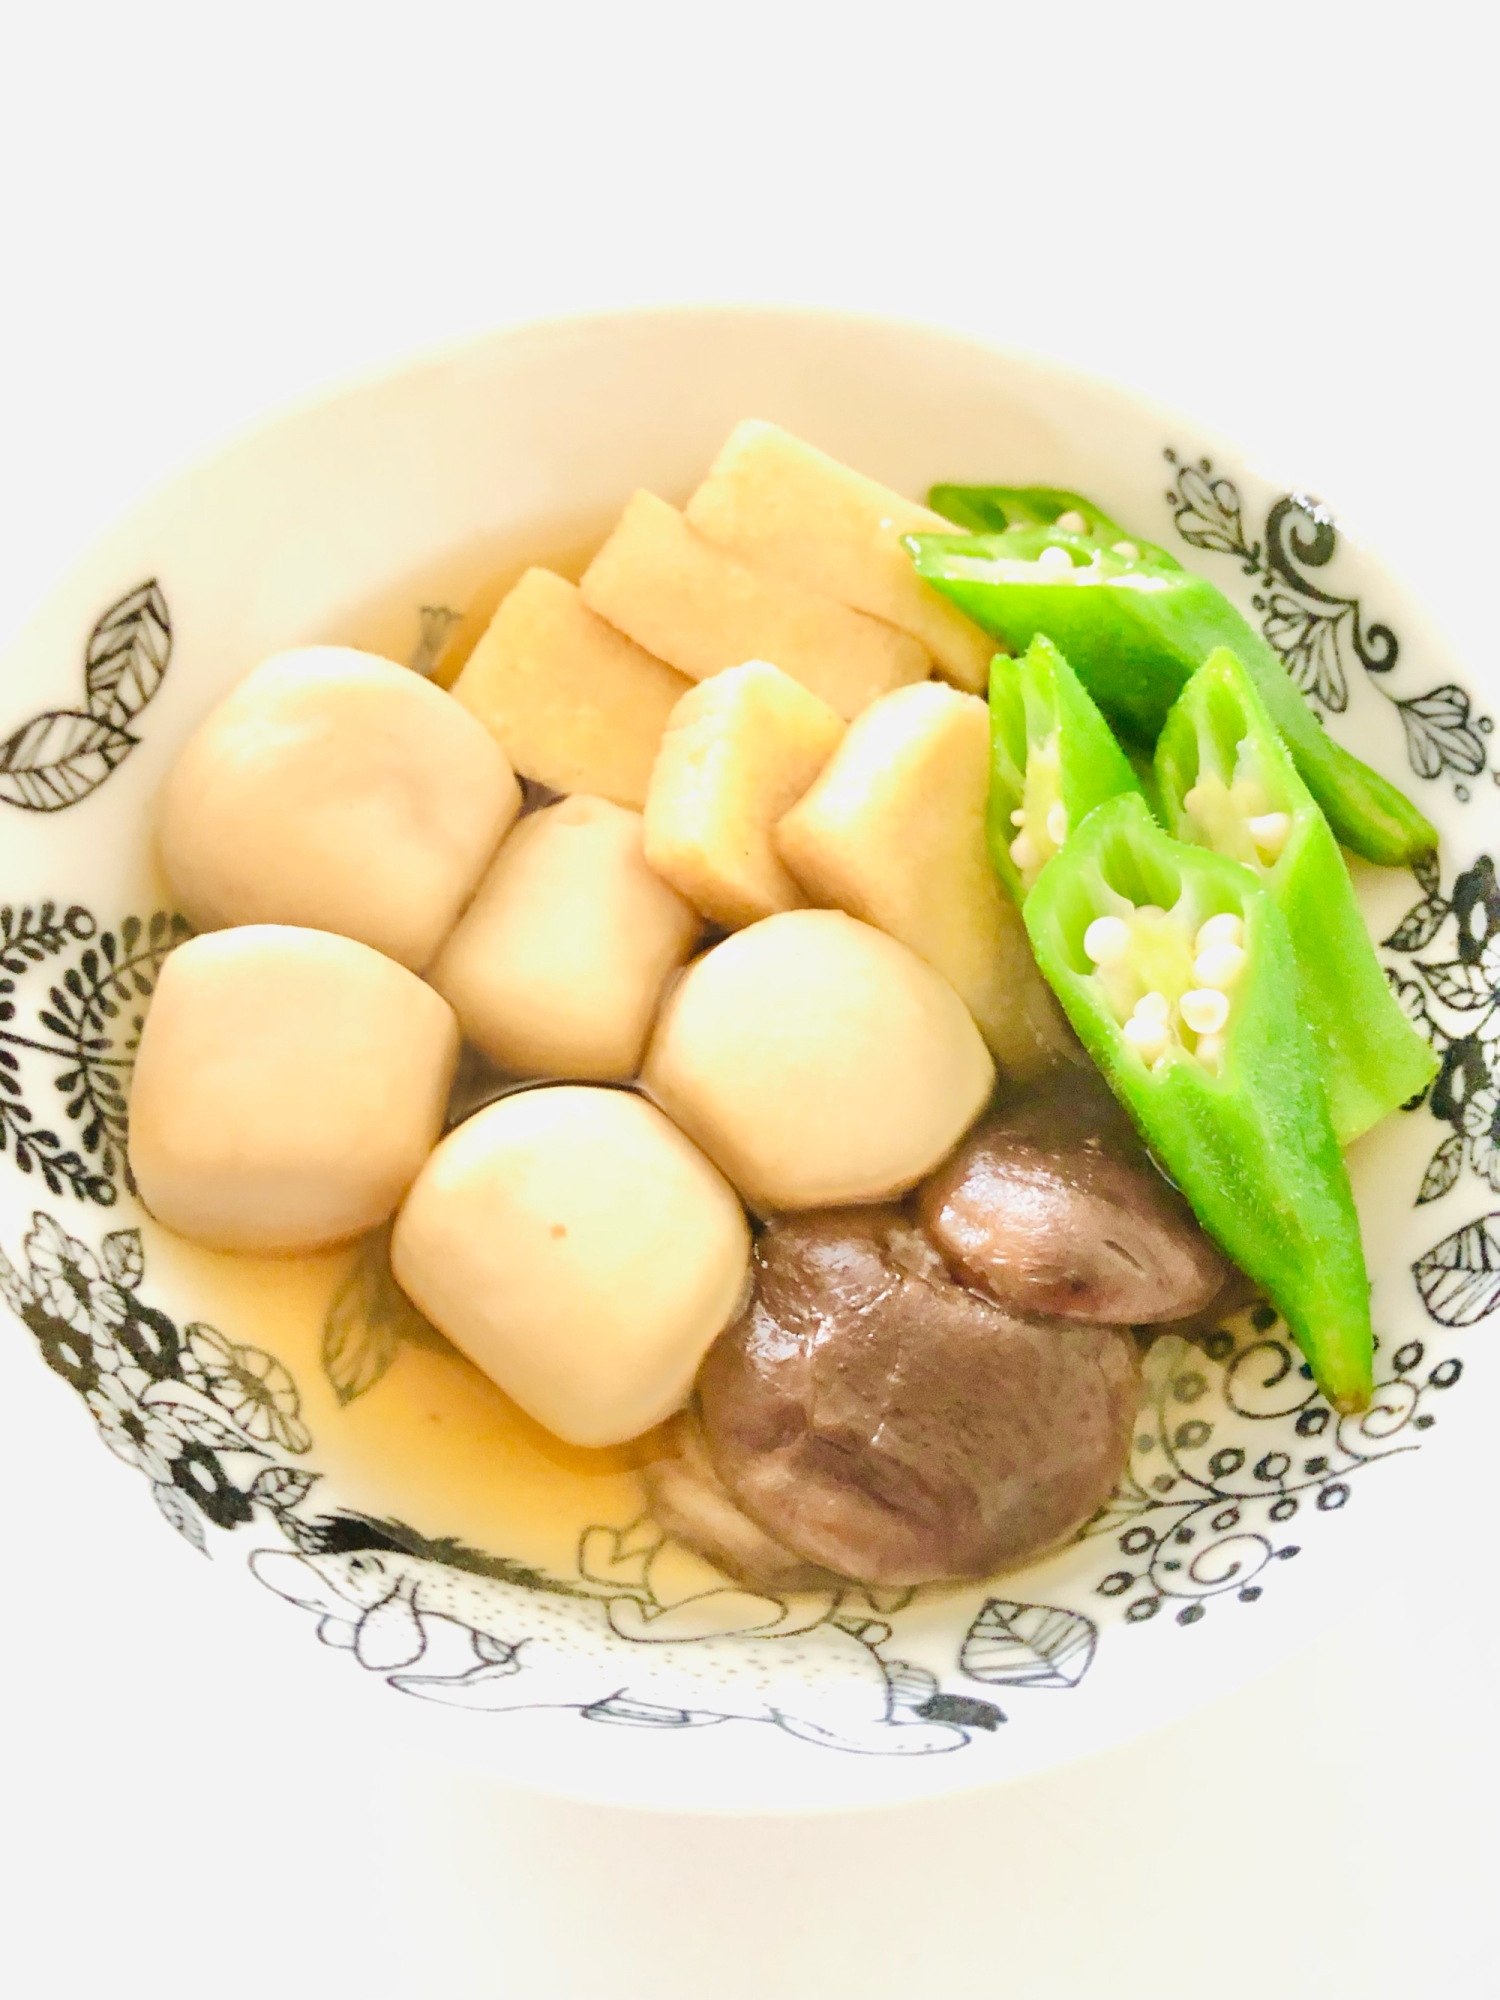 里芋高野豆腐椎茸煮物